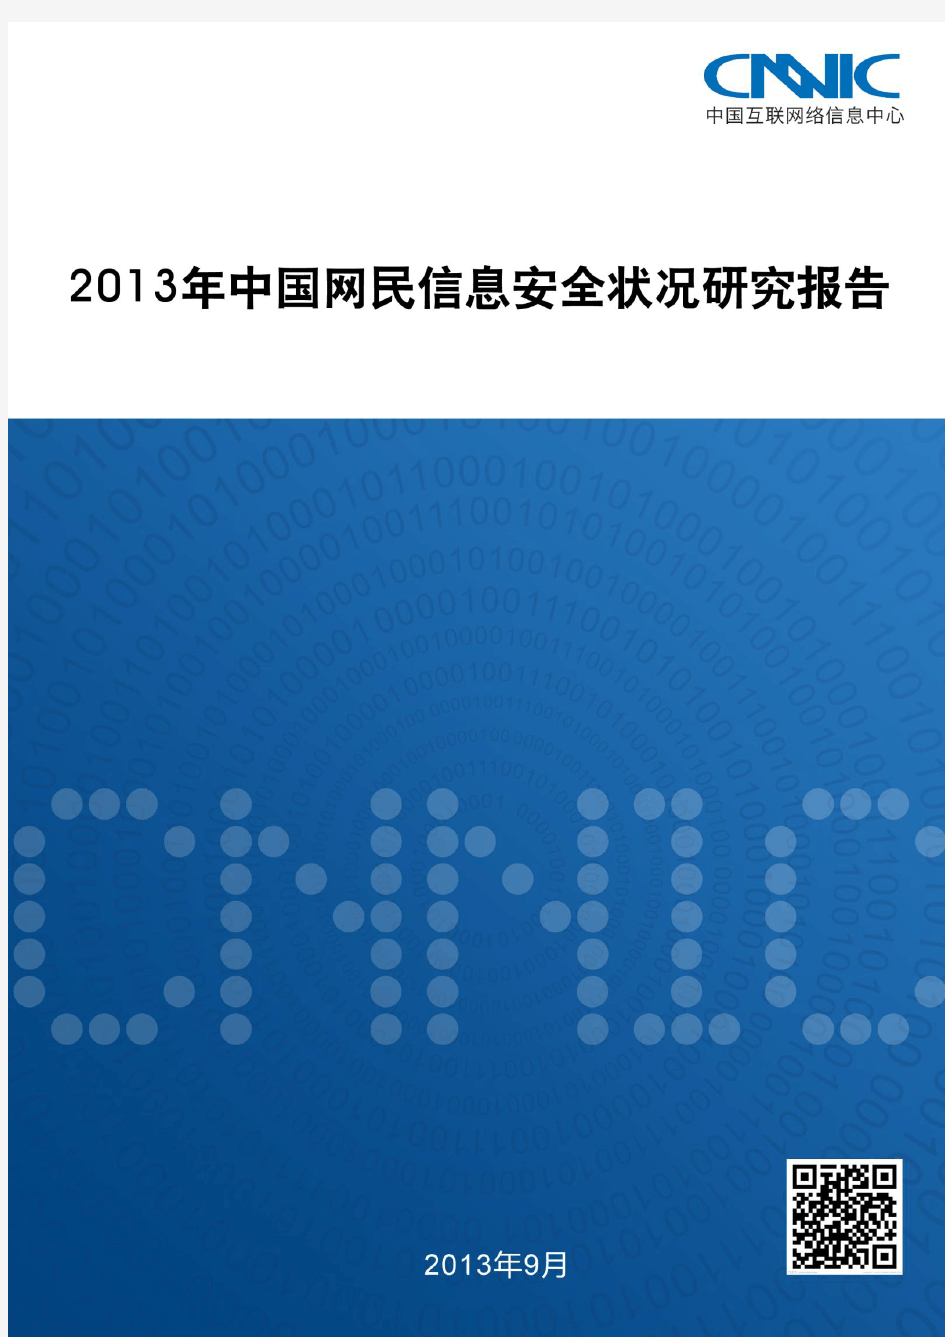 2013年中国网民信息安全状况研究报告